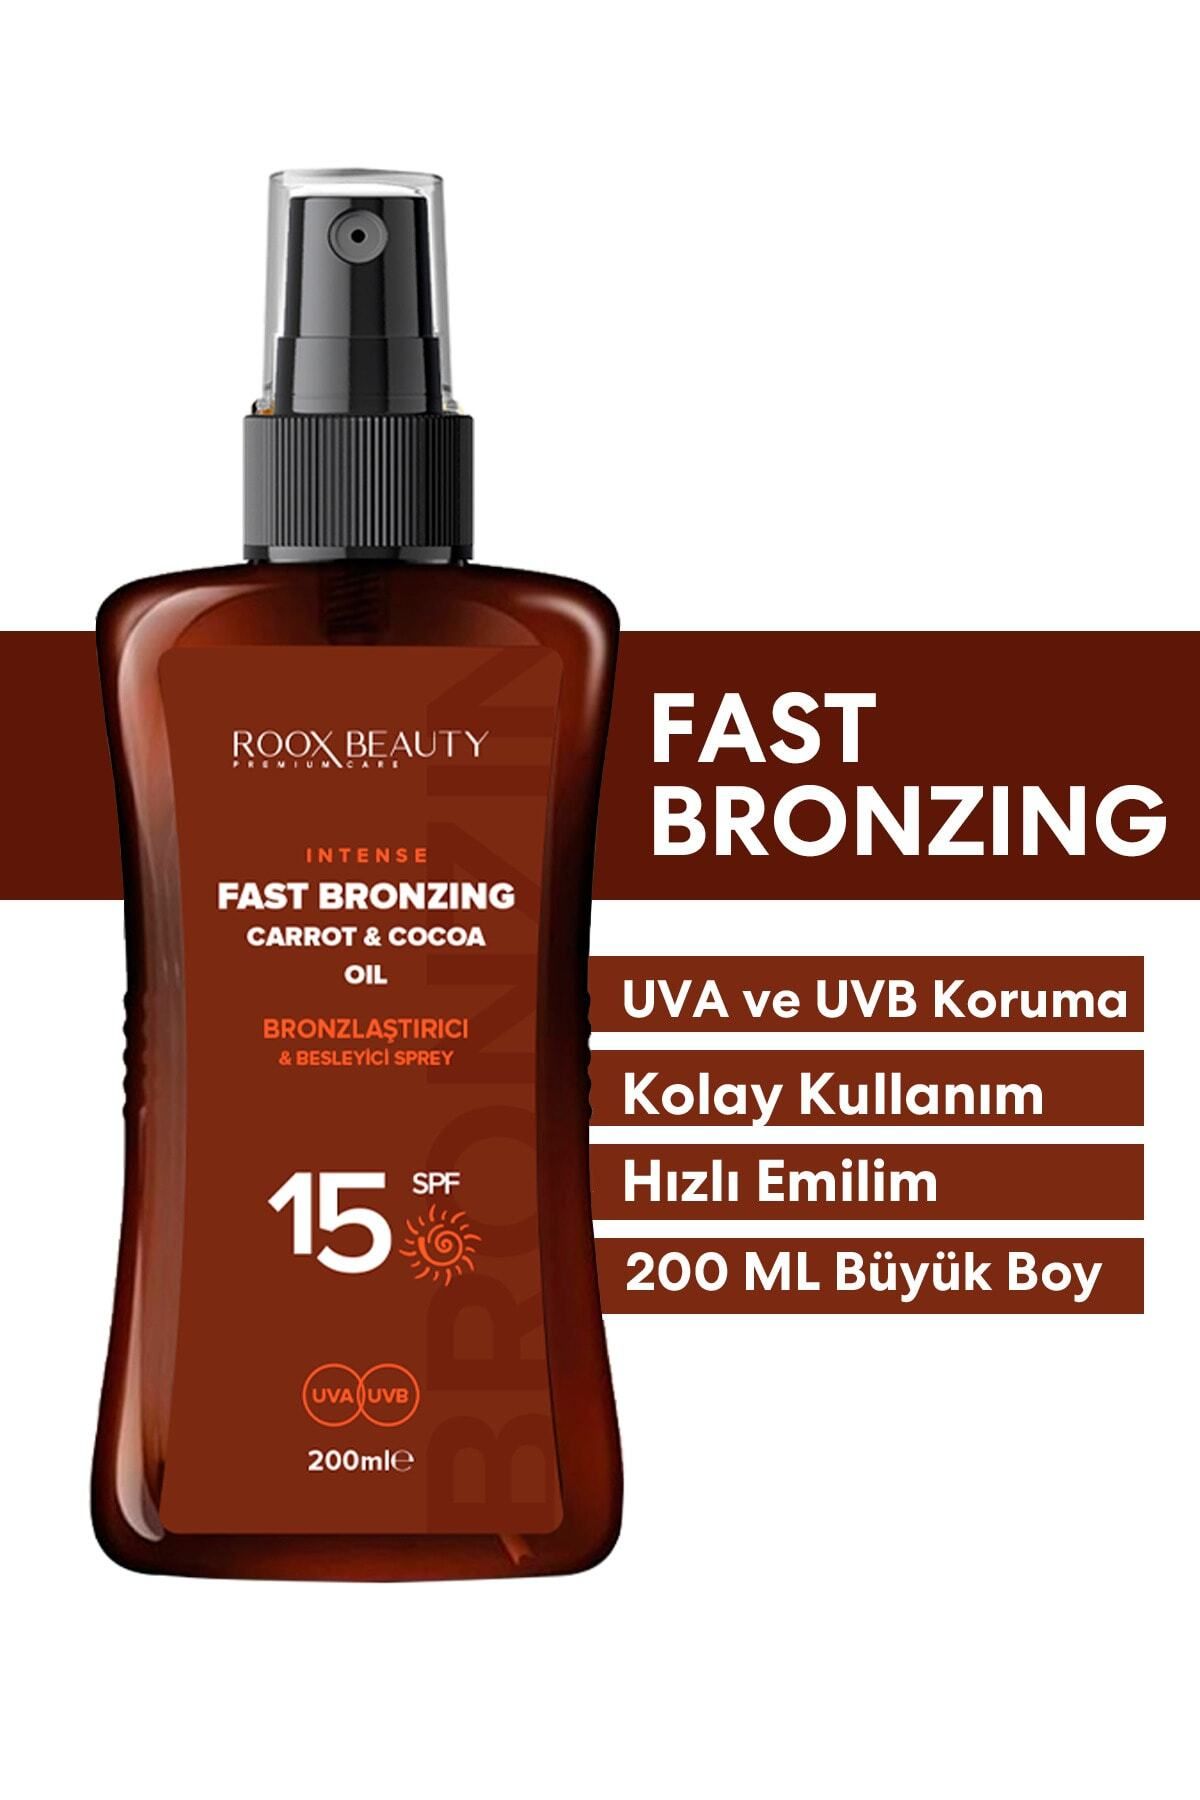 Roox Beauty Bronzlaştırıcı & Besleyici Spf 15 Fast Bronzing Oil 200 ml